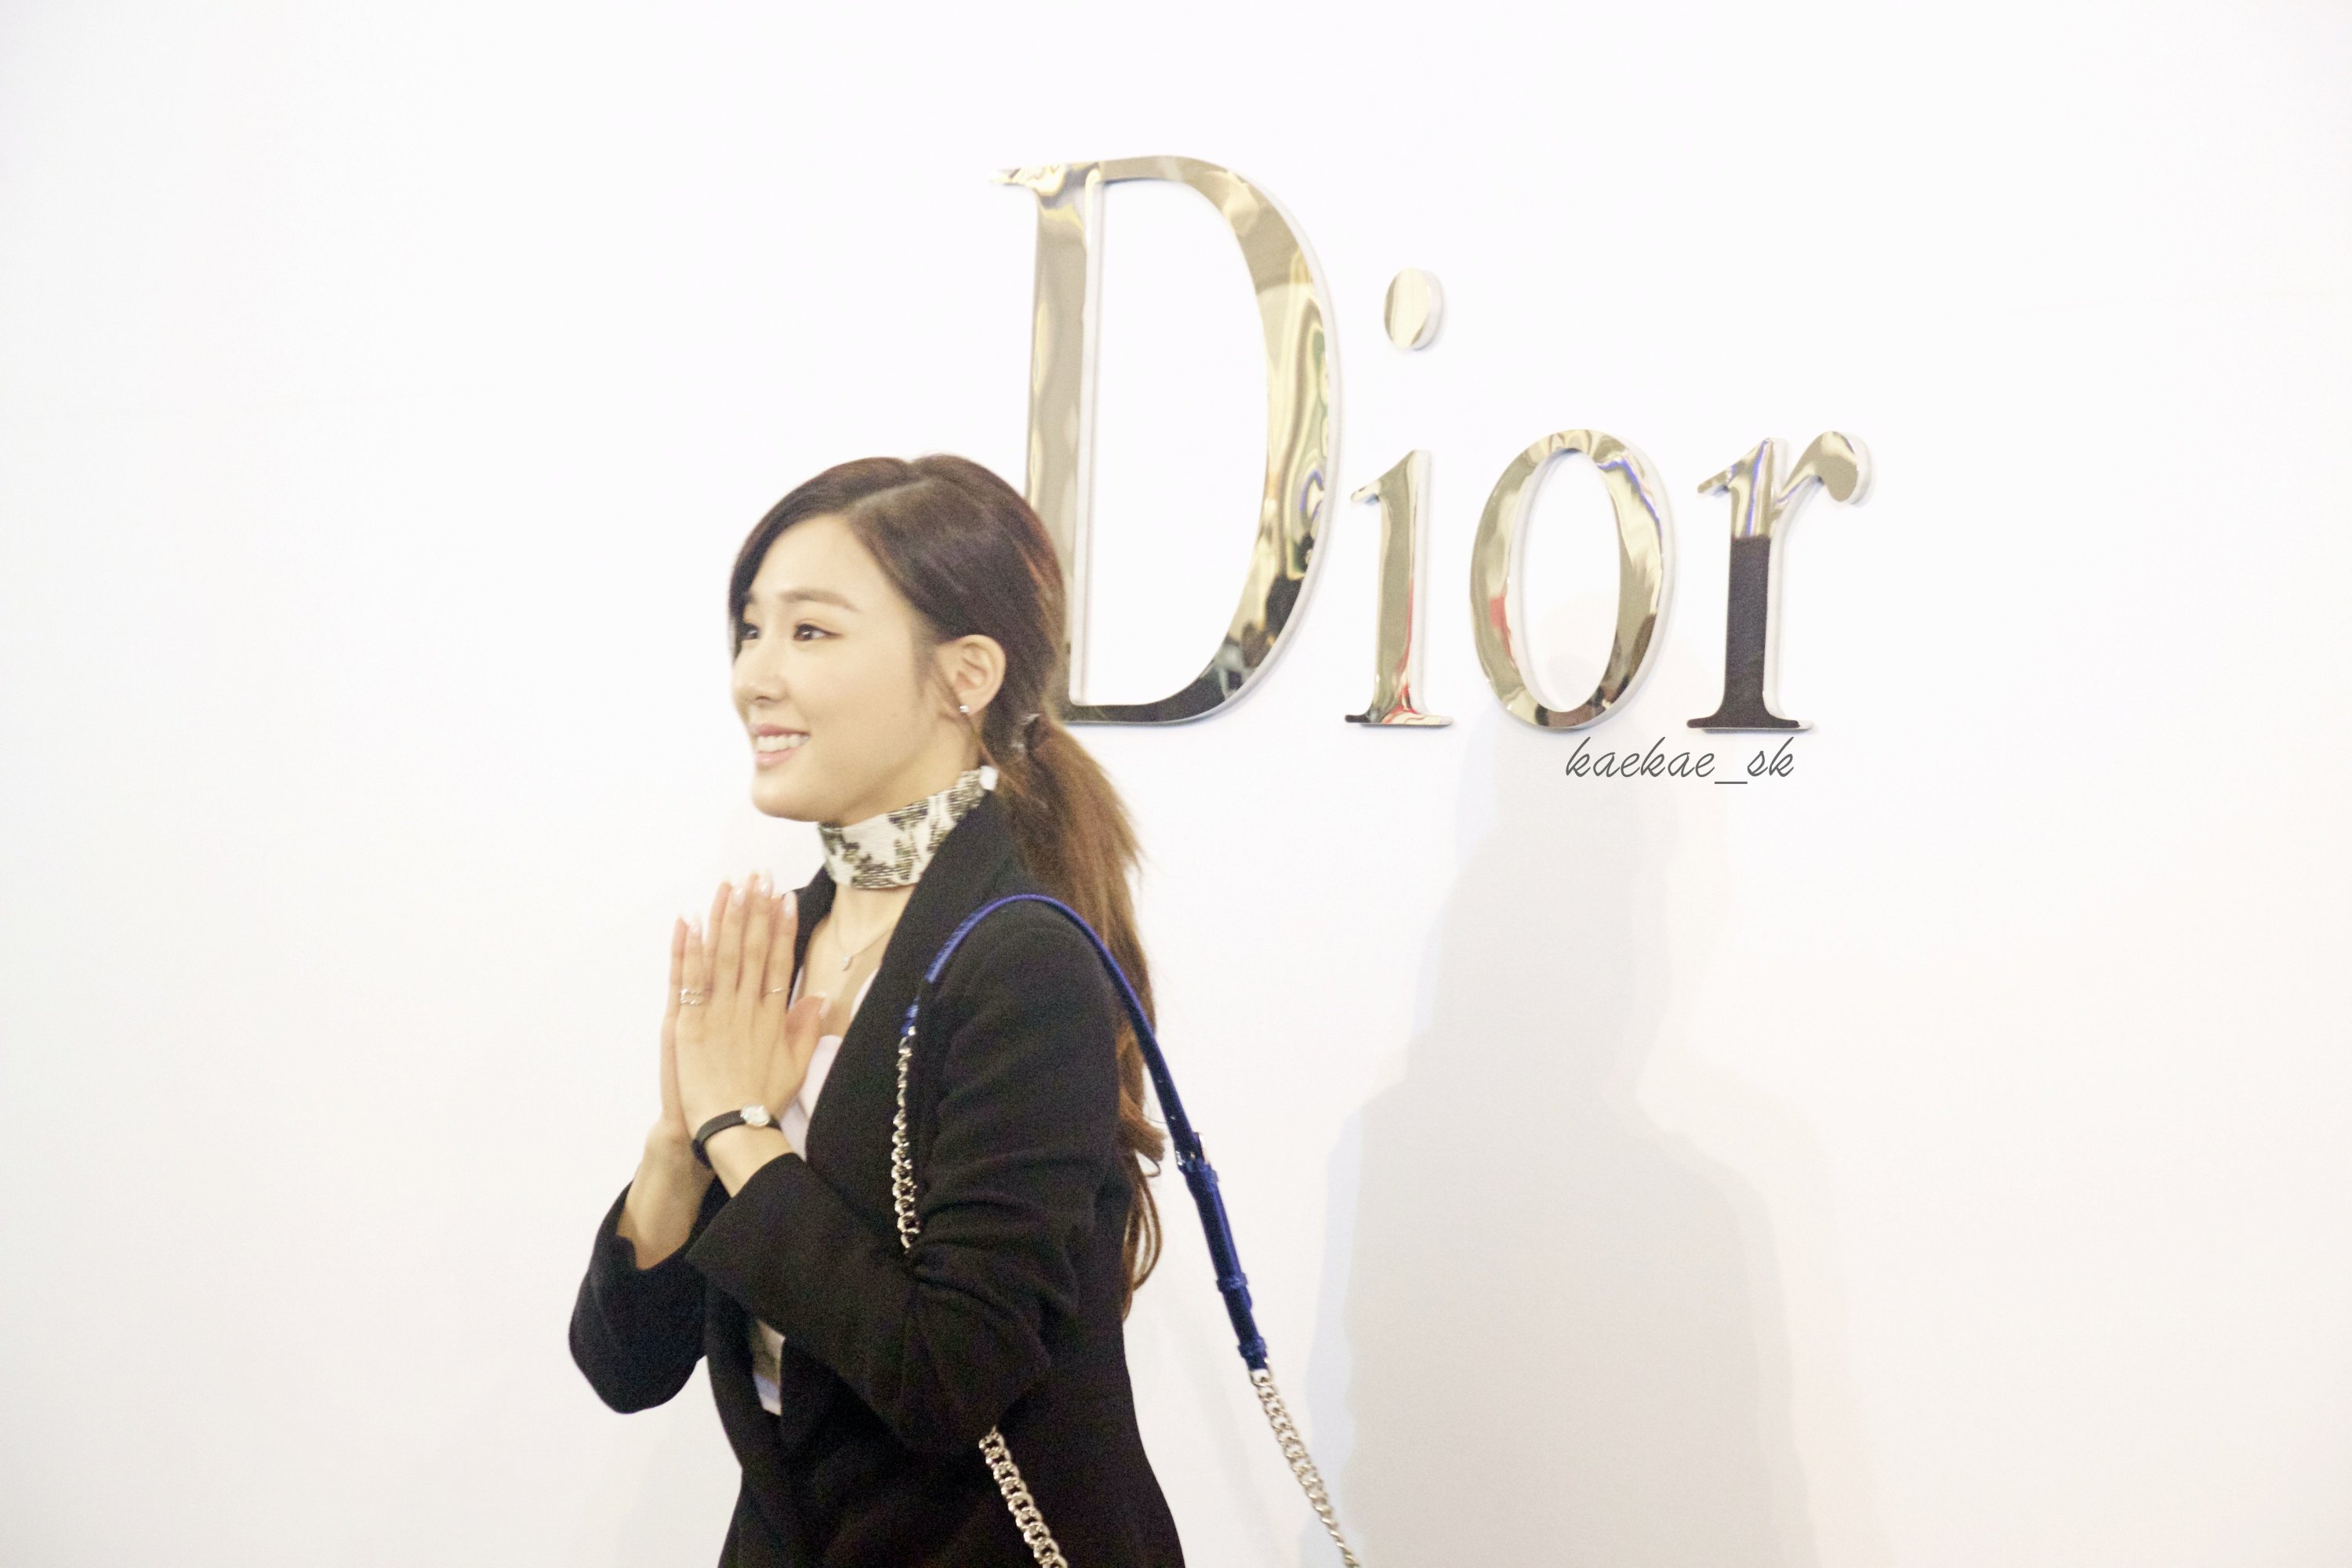 [PIC][17-02-2016]Tiffany khởi hành đi Thái Lan để tham dự sự kiện khai trương chi nhánh của thương hiệu "Christian Dior" vào hôm nay - Page 8 UBP0IX7Xzn-3000x3000